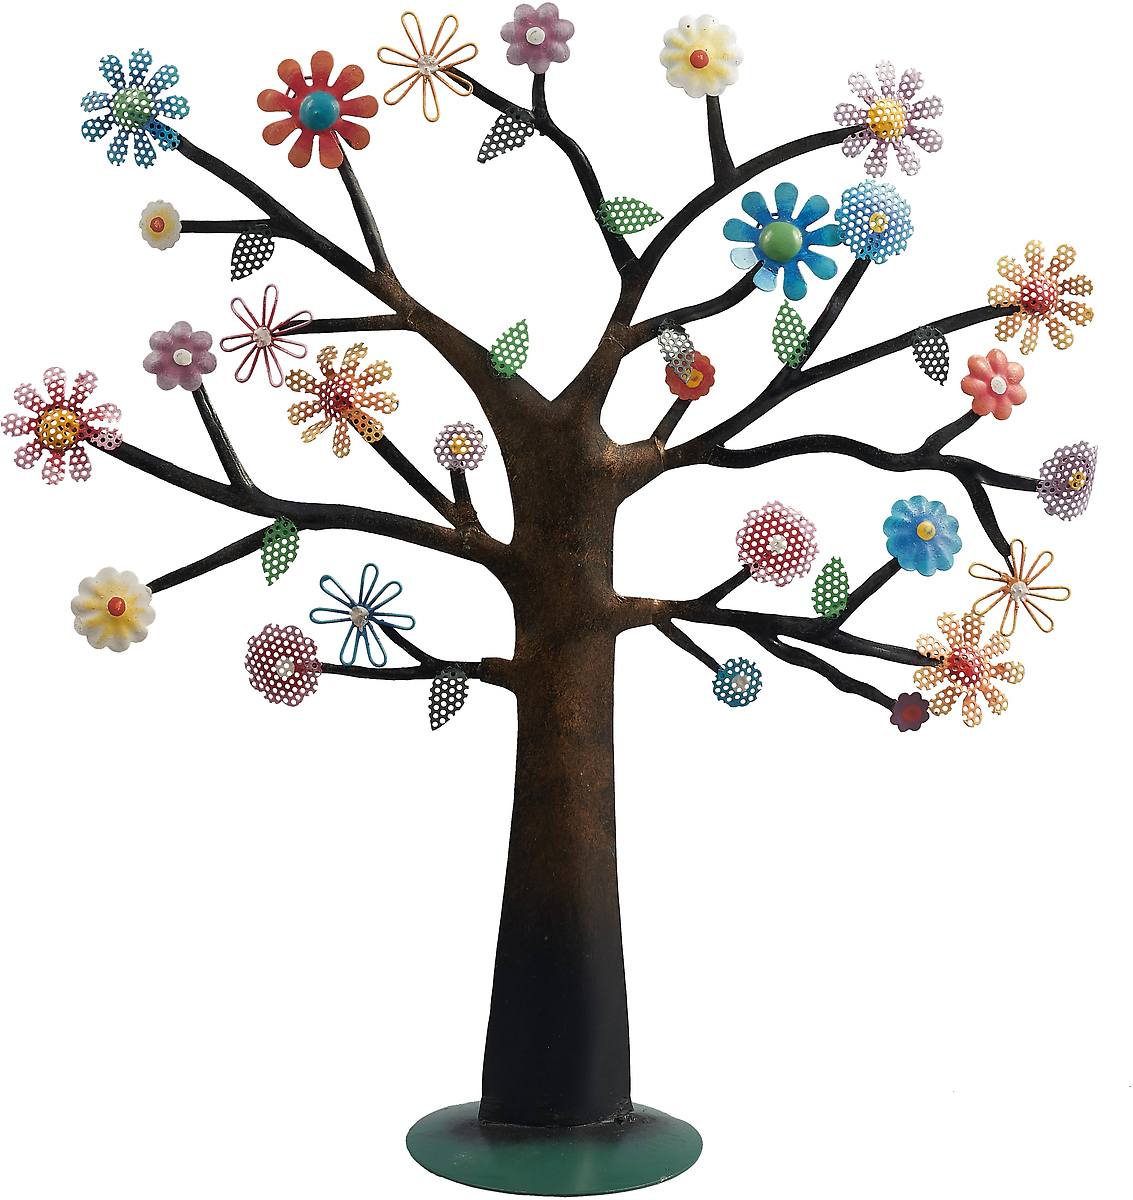 Подставка для украшений You'll Love Цветущее дерево, 73200, в ассортименте